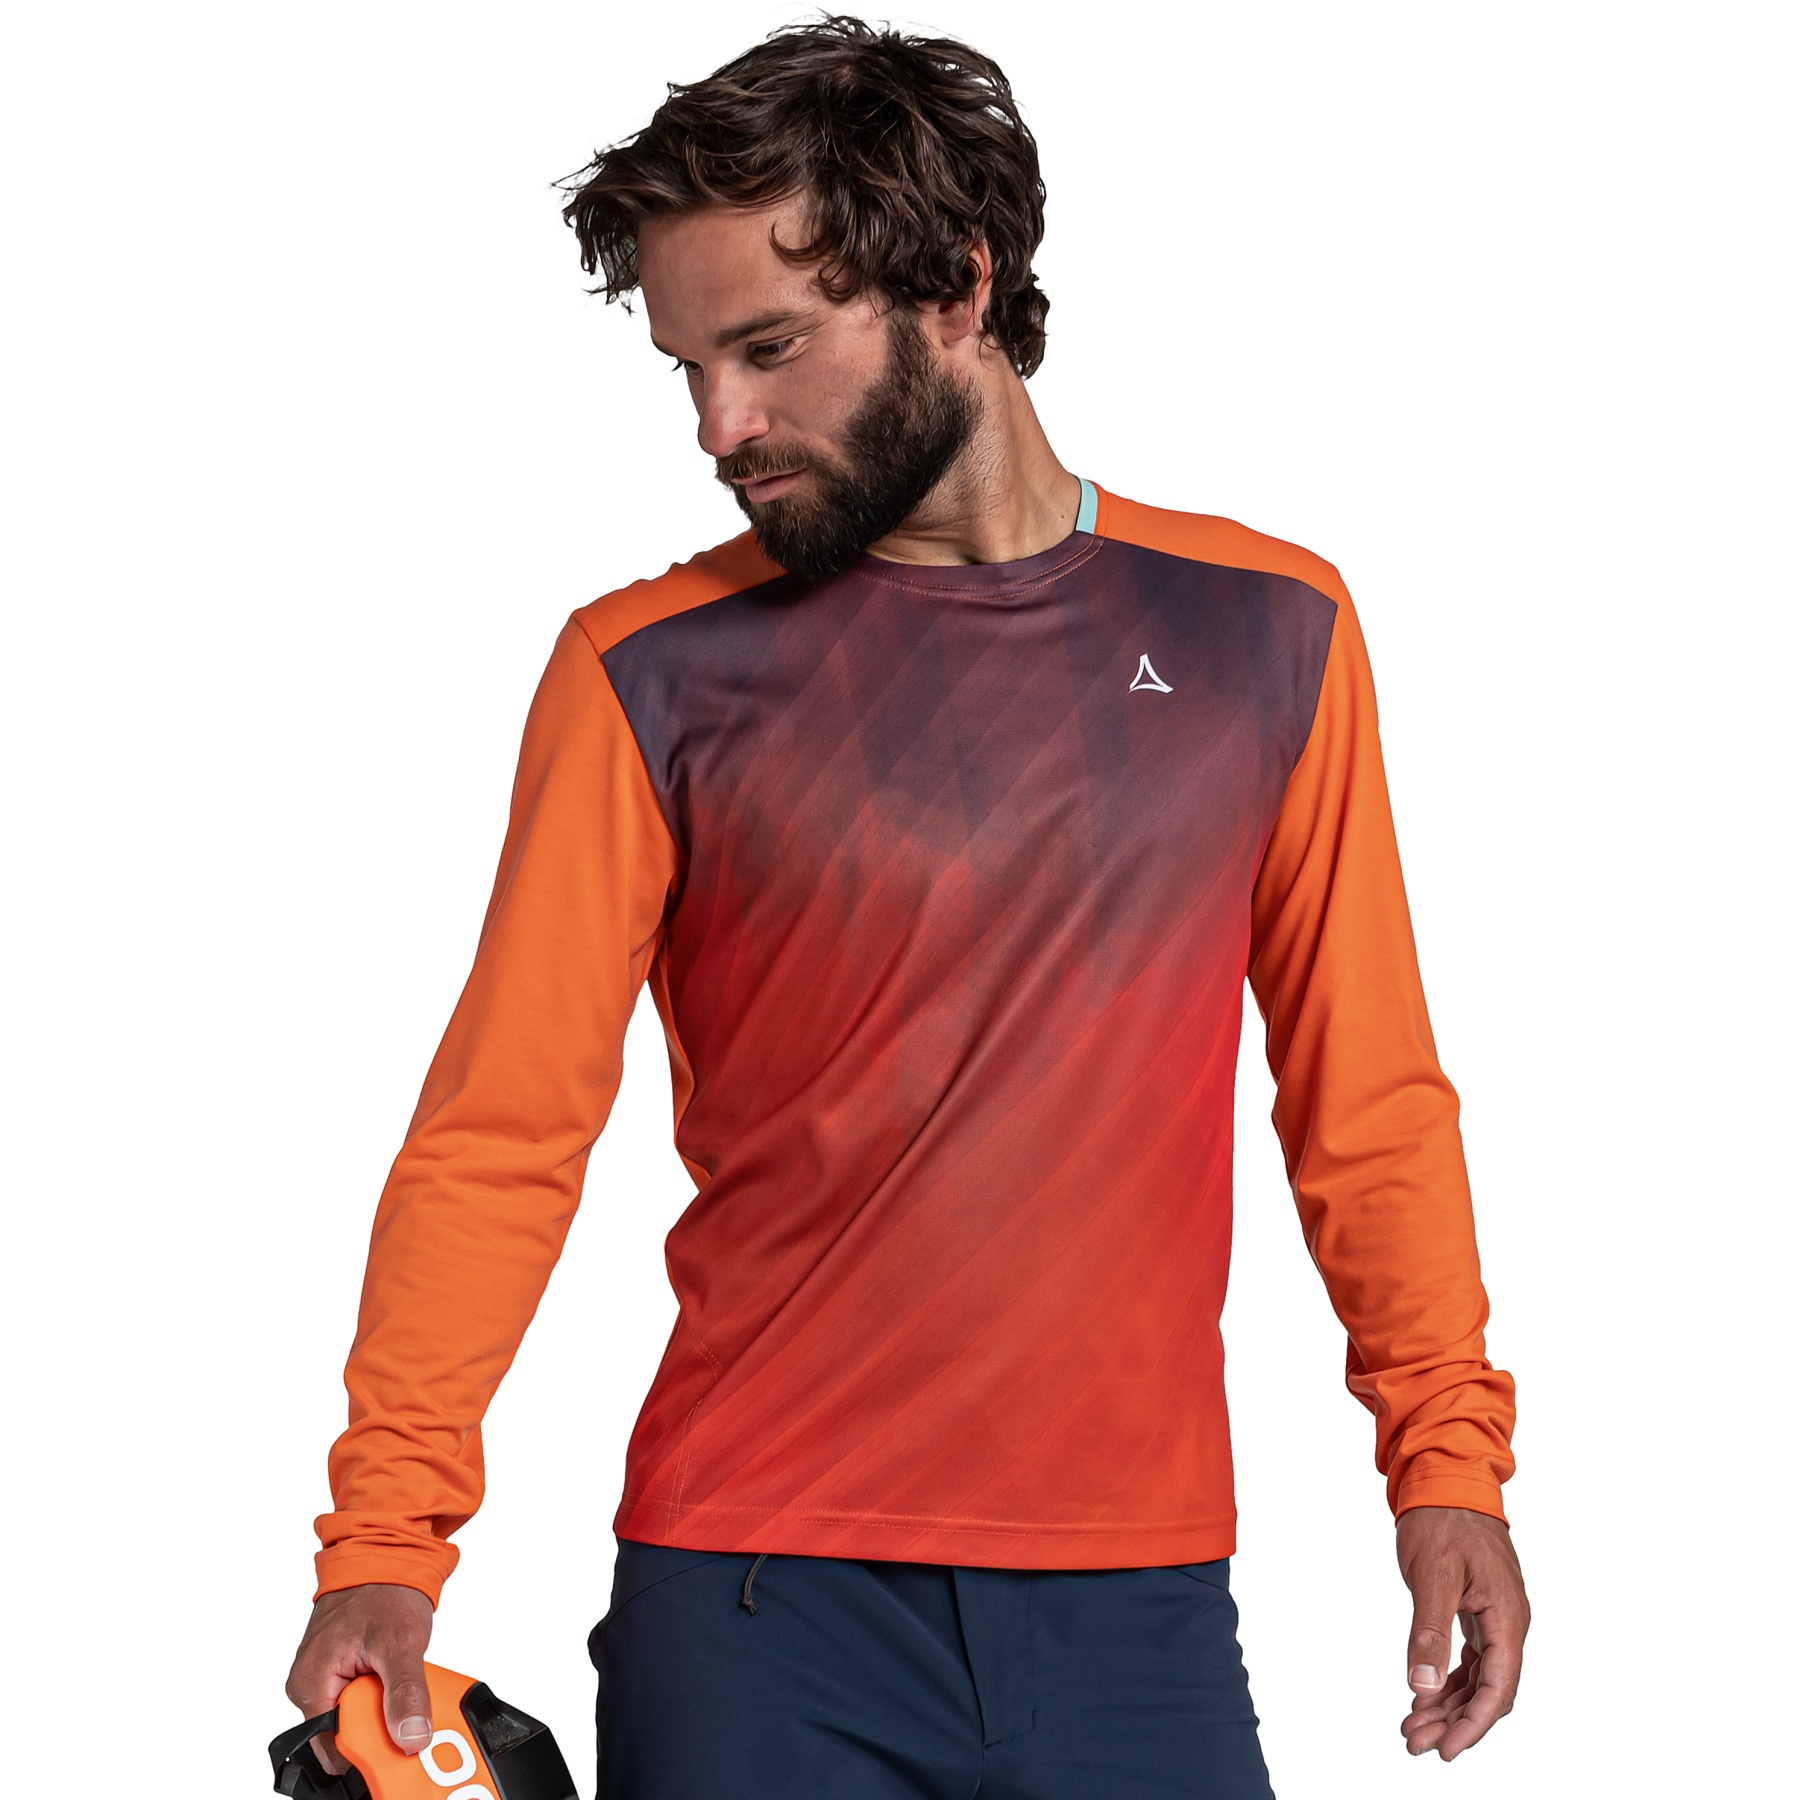 Produktbild von Schöffel Altitude Langarm-Shirt - rot orange 5360